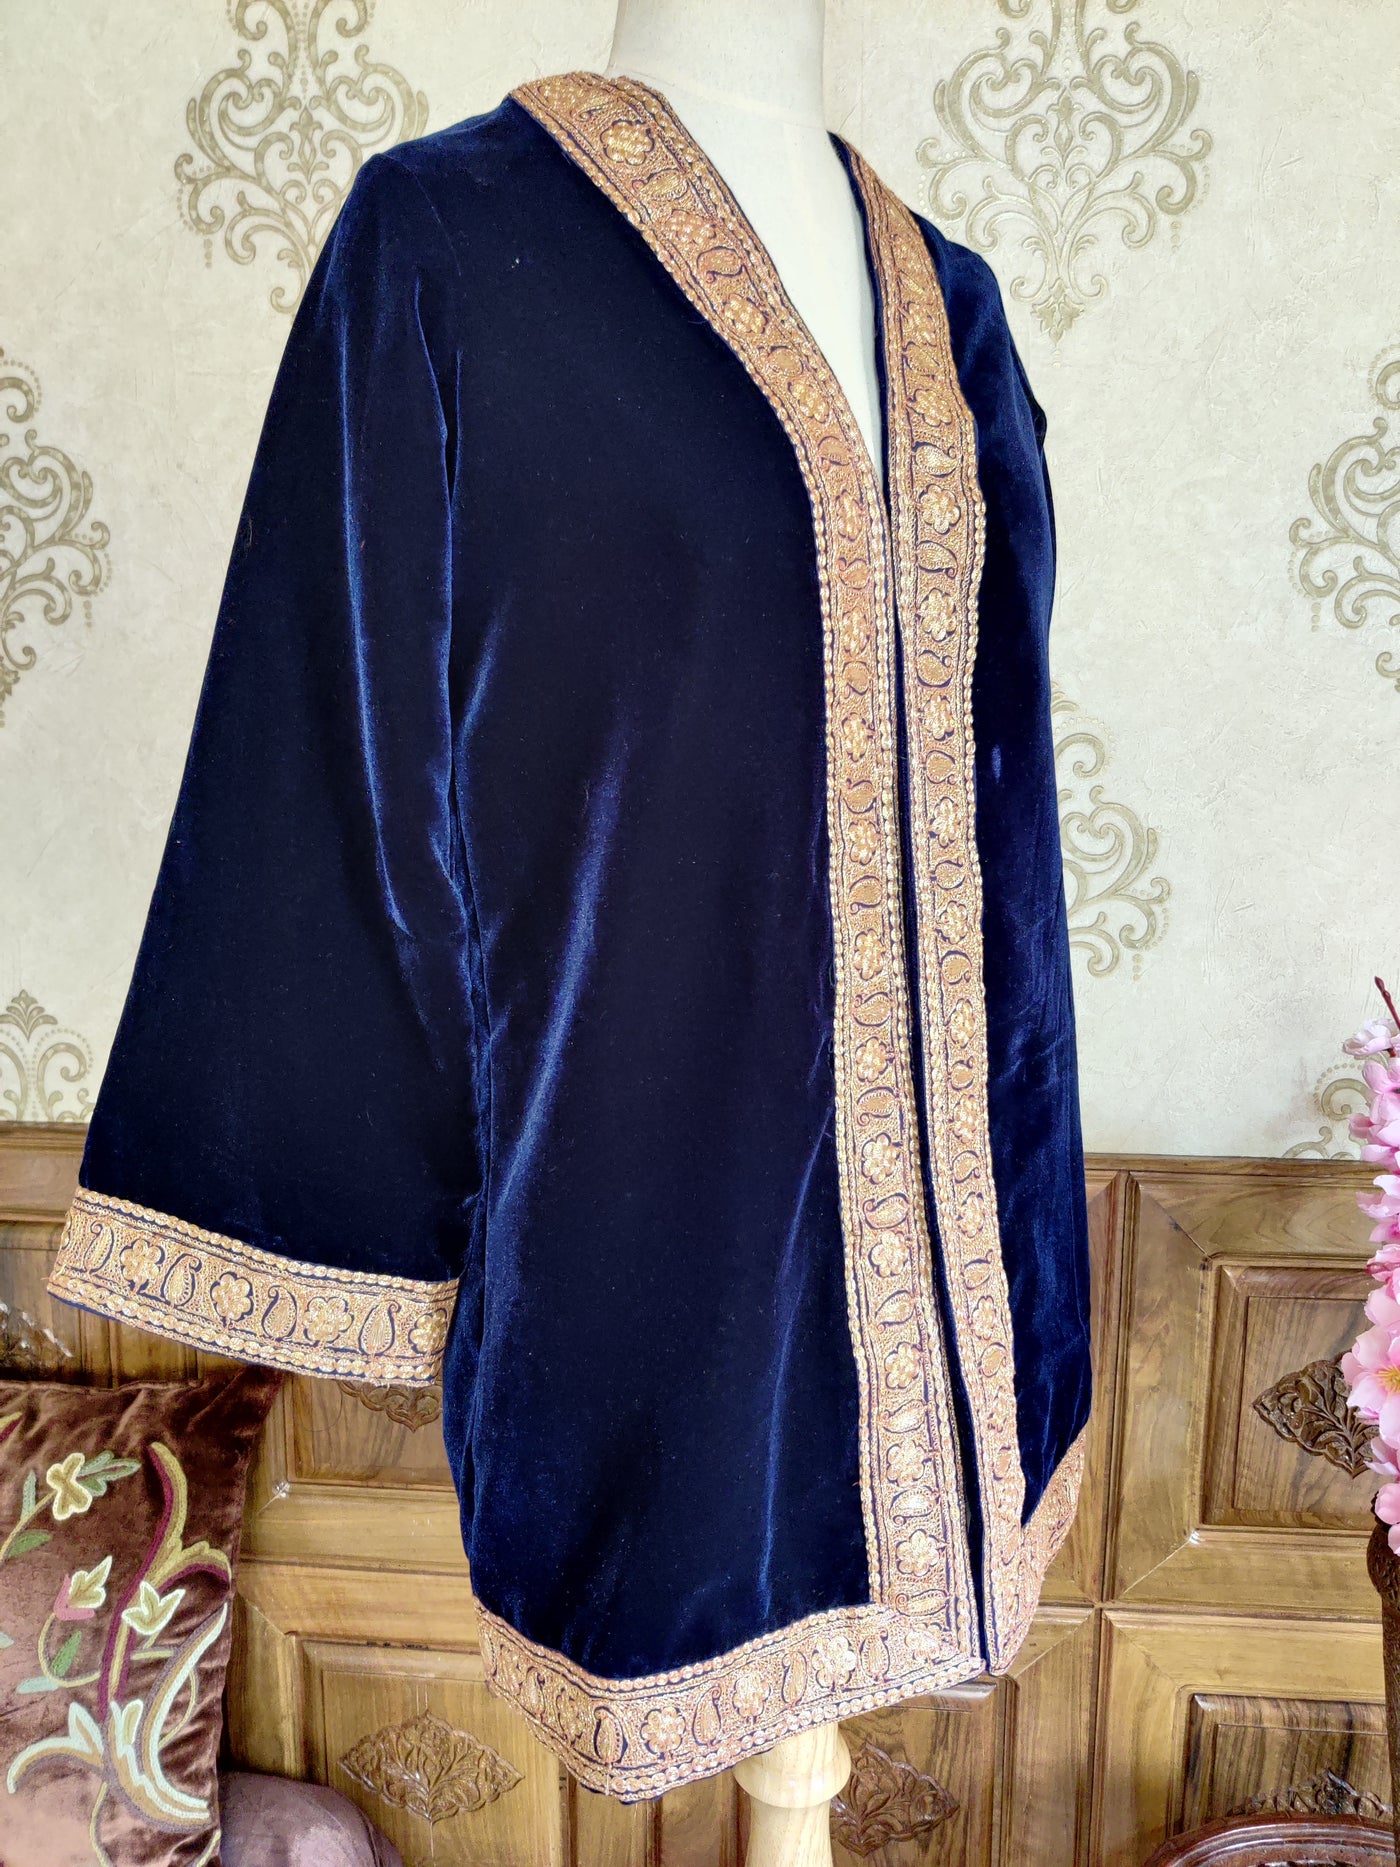 Blue Kashmiri Robe With tilla Embroidery , Luxurious Velvet Kimono Robe With Tilla Work